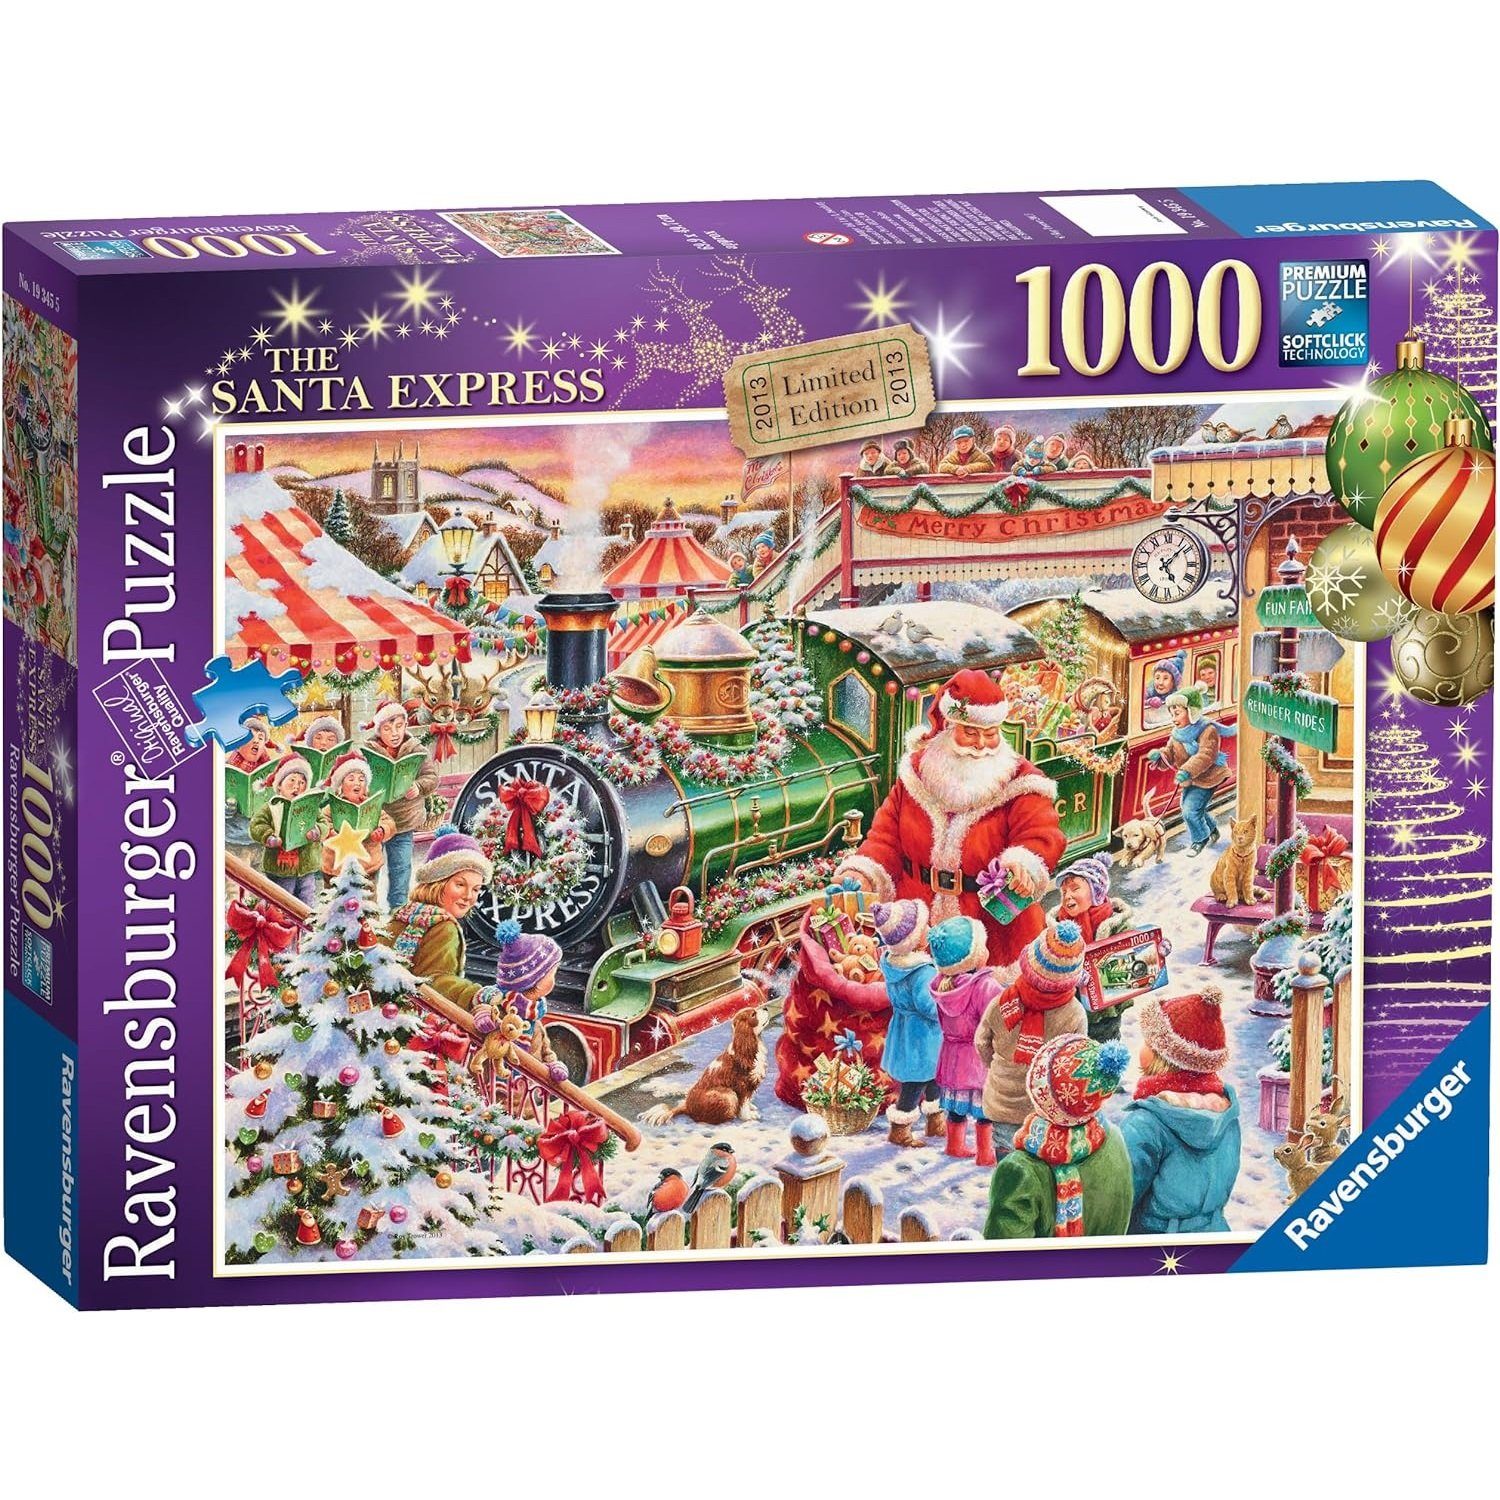 Ravensburger Puzzle Ravensburger - Weihnachtszug, 1000 Puzzleteile, 1000 Teile Puzzle